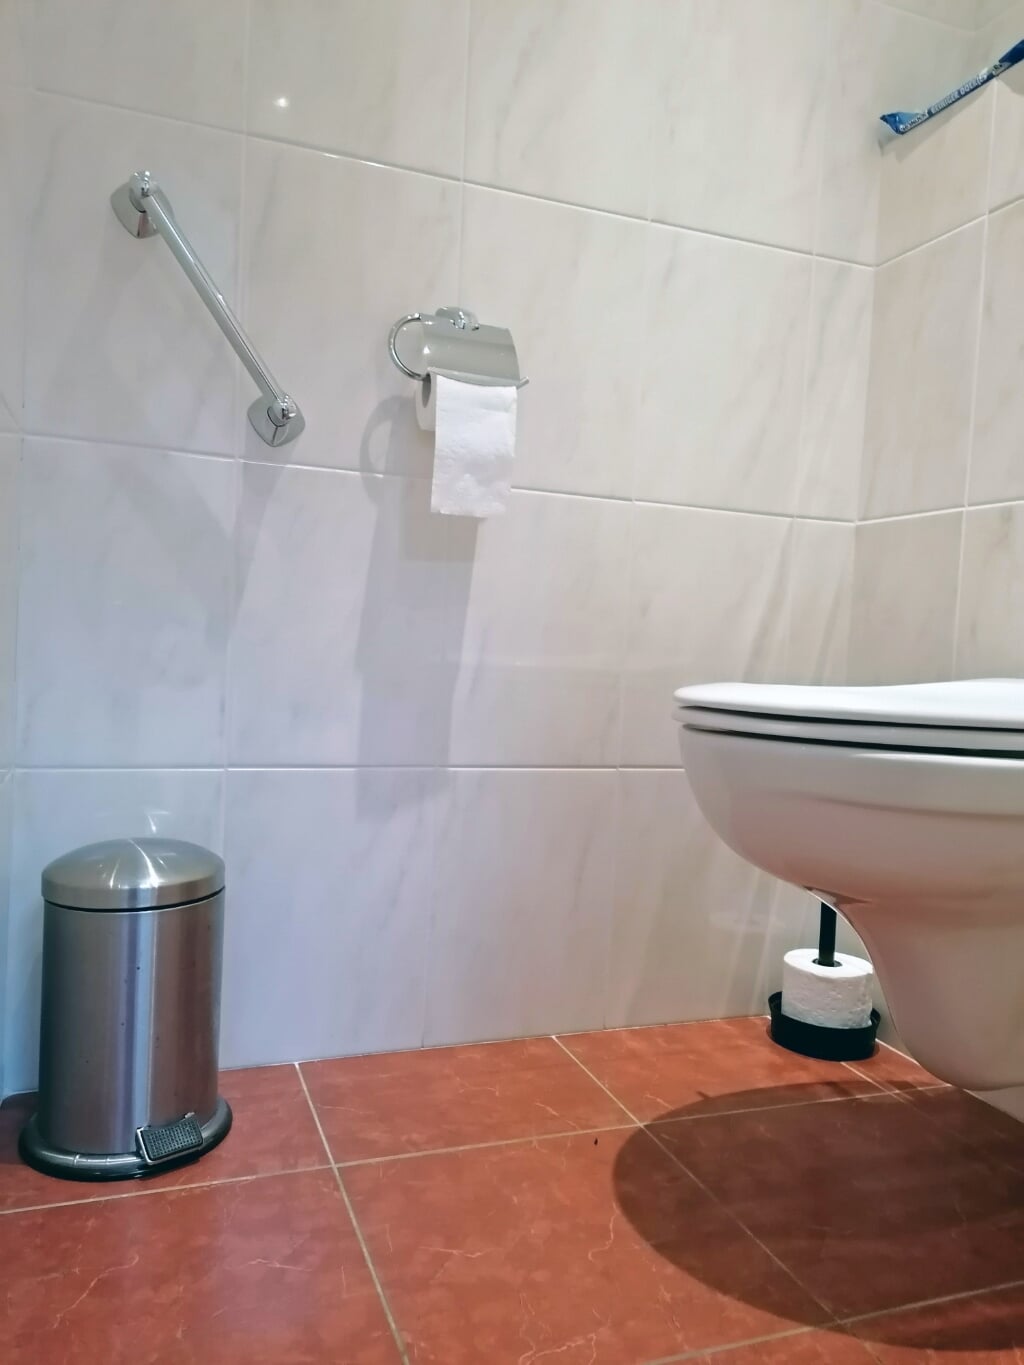 Een voorbeeld van een interne verbouwing van een toilet